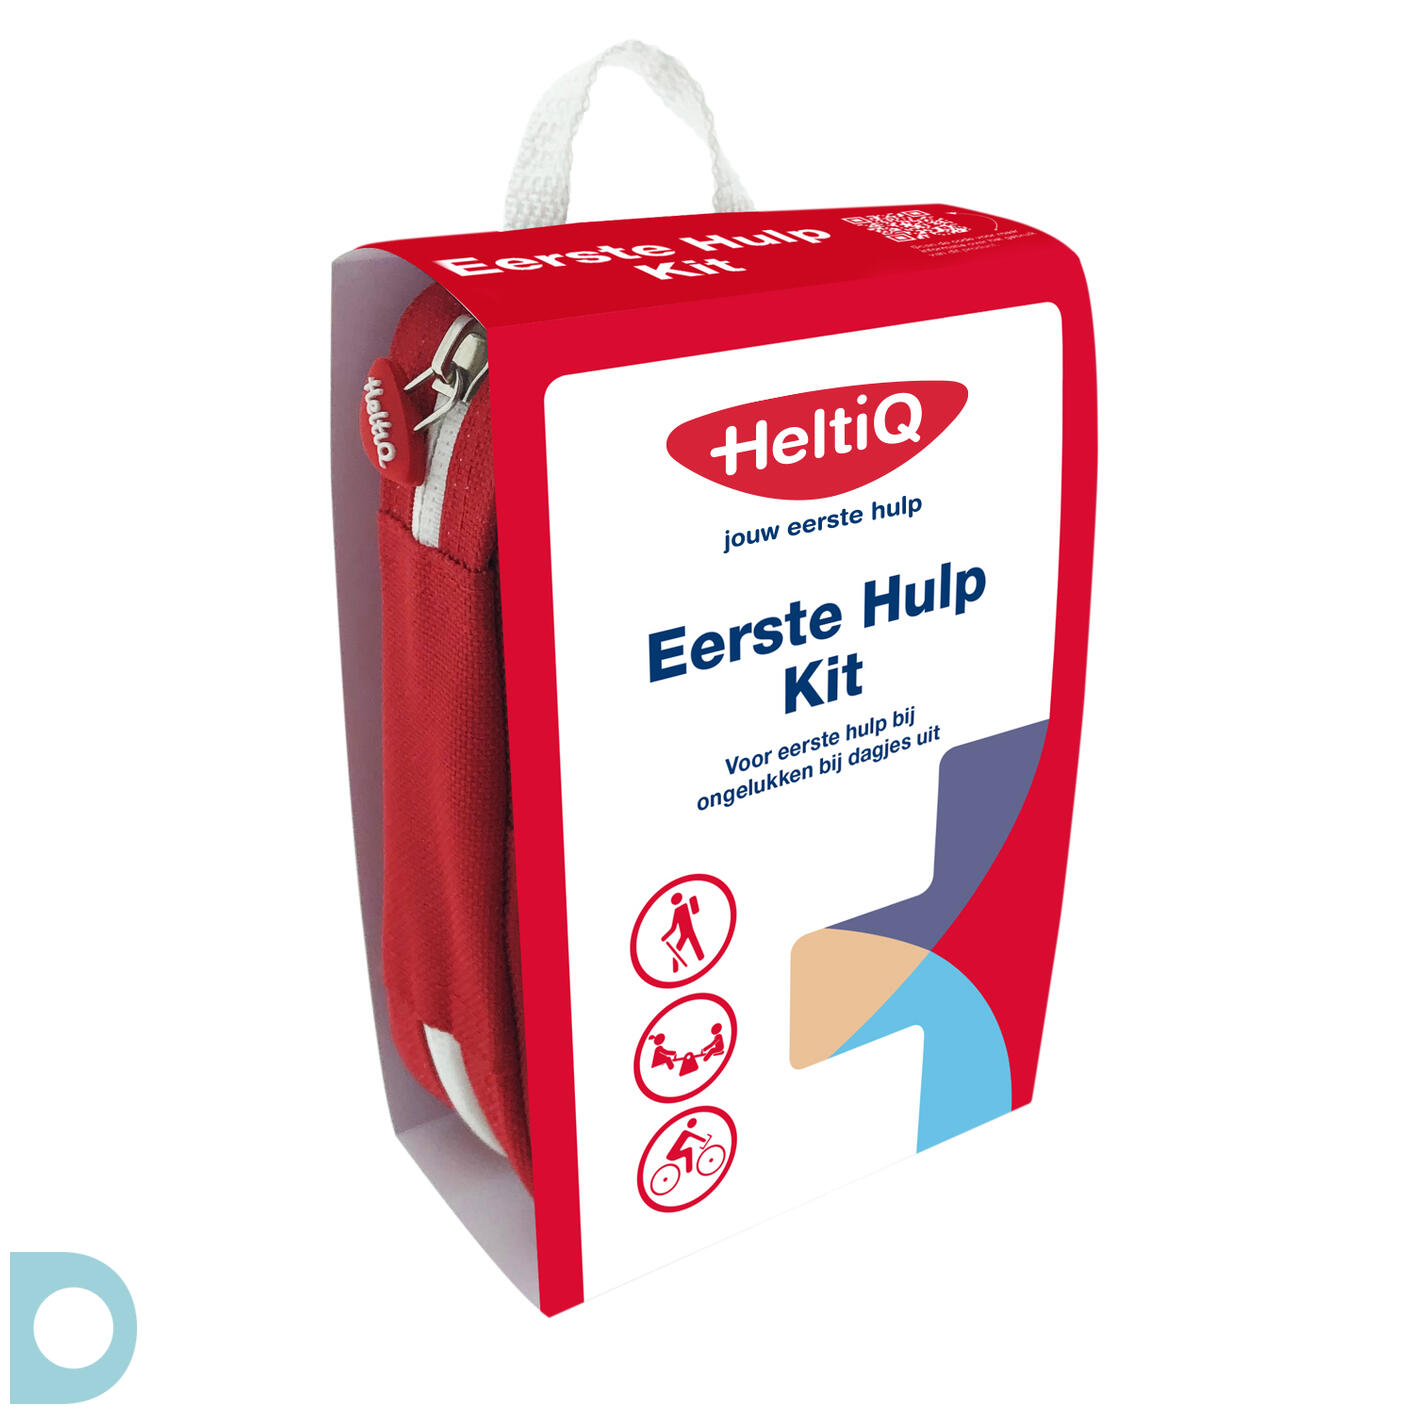 navigatie poort Verdraaiing HeltiQ Eerste Hulp Kit kopen bij De Online Drogist.